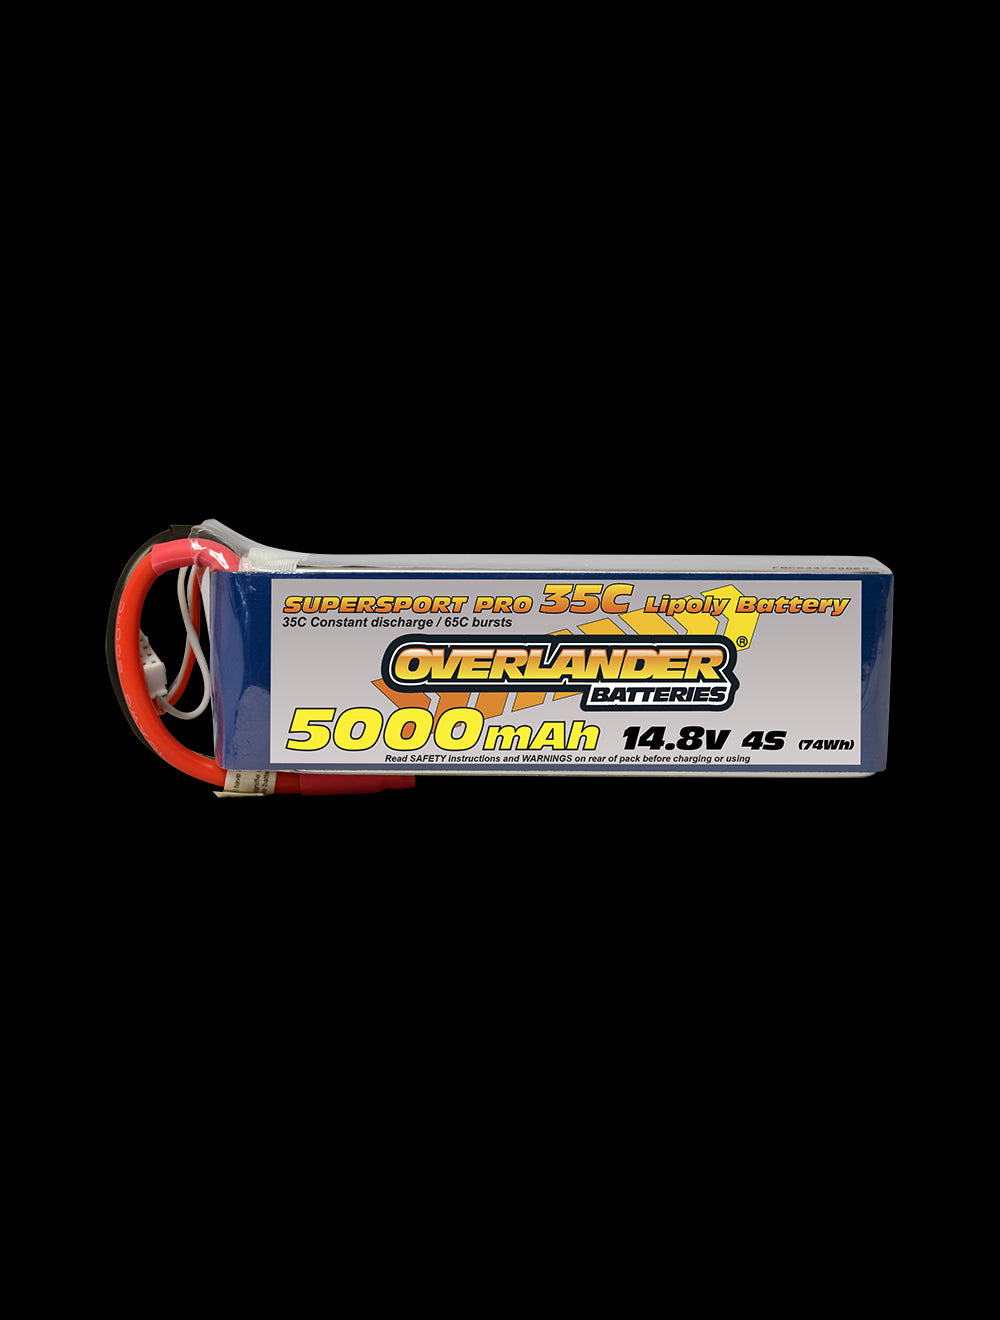 Overlander 5000mAh 14.8V 4S 35C Supersport Pro LiPo Battery - XT60 Connector 2578